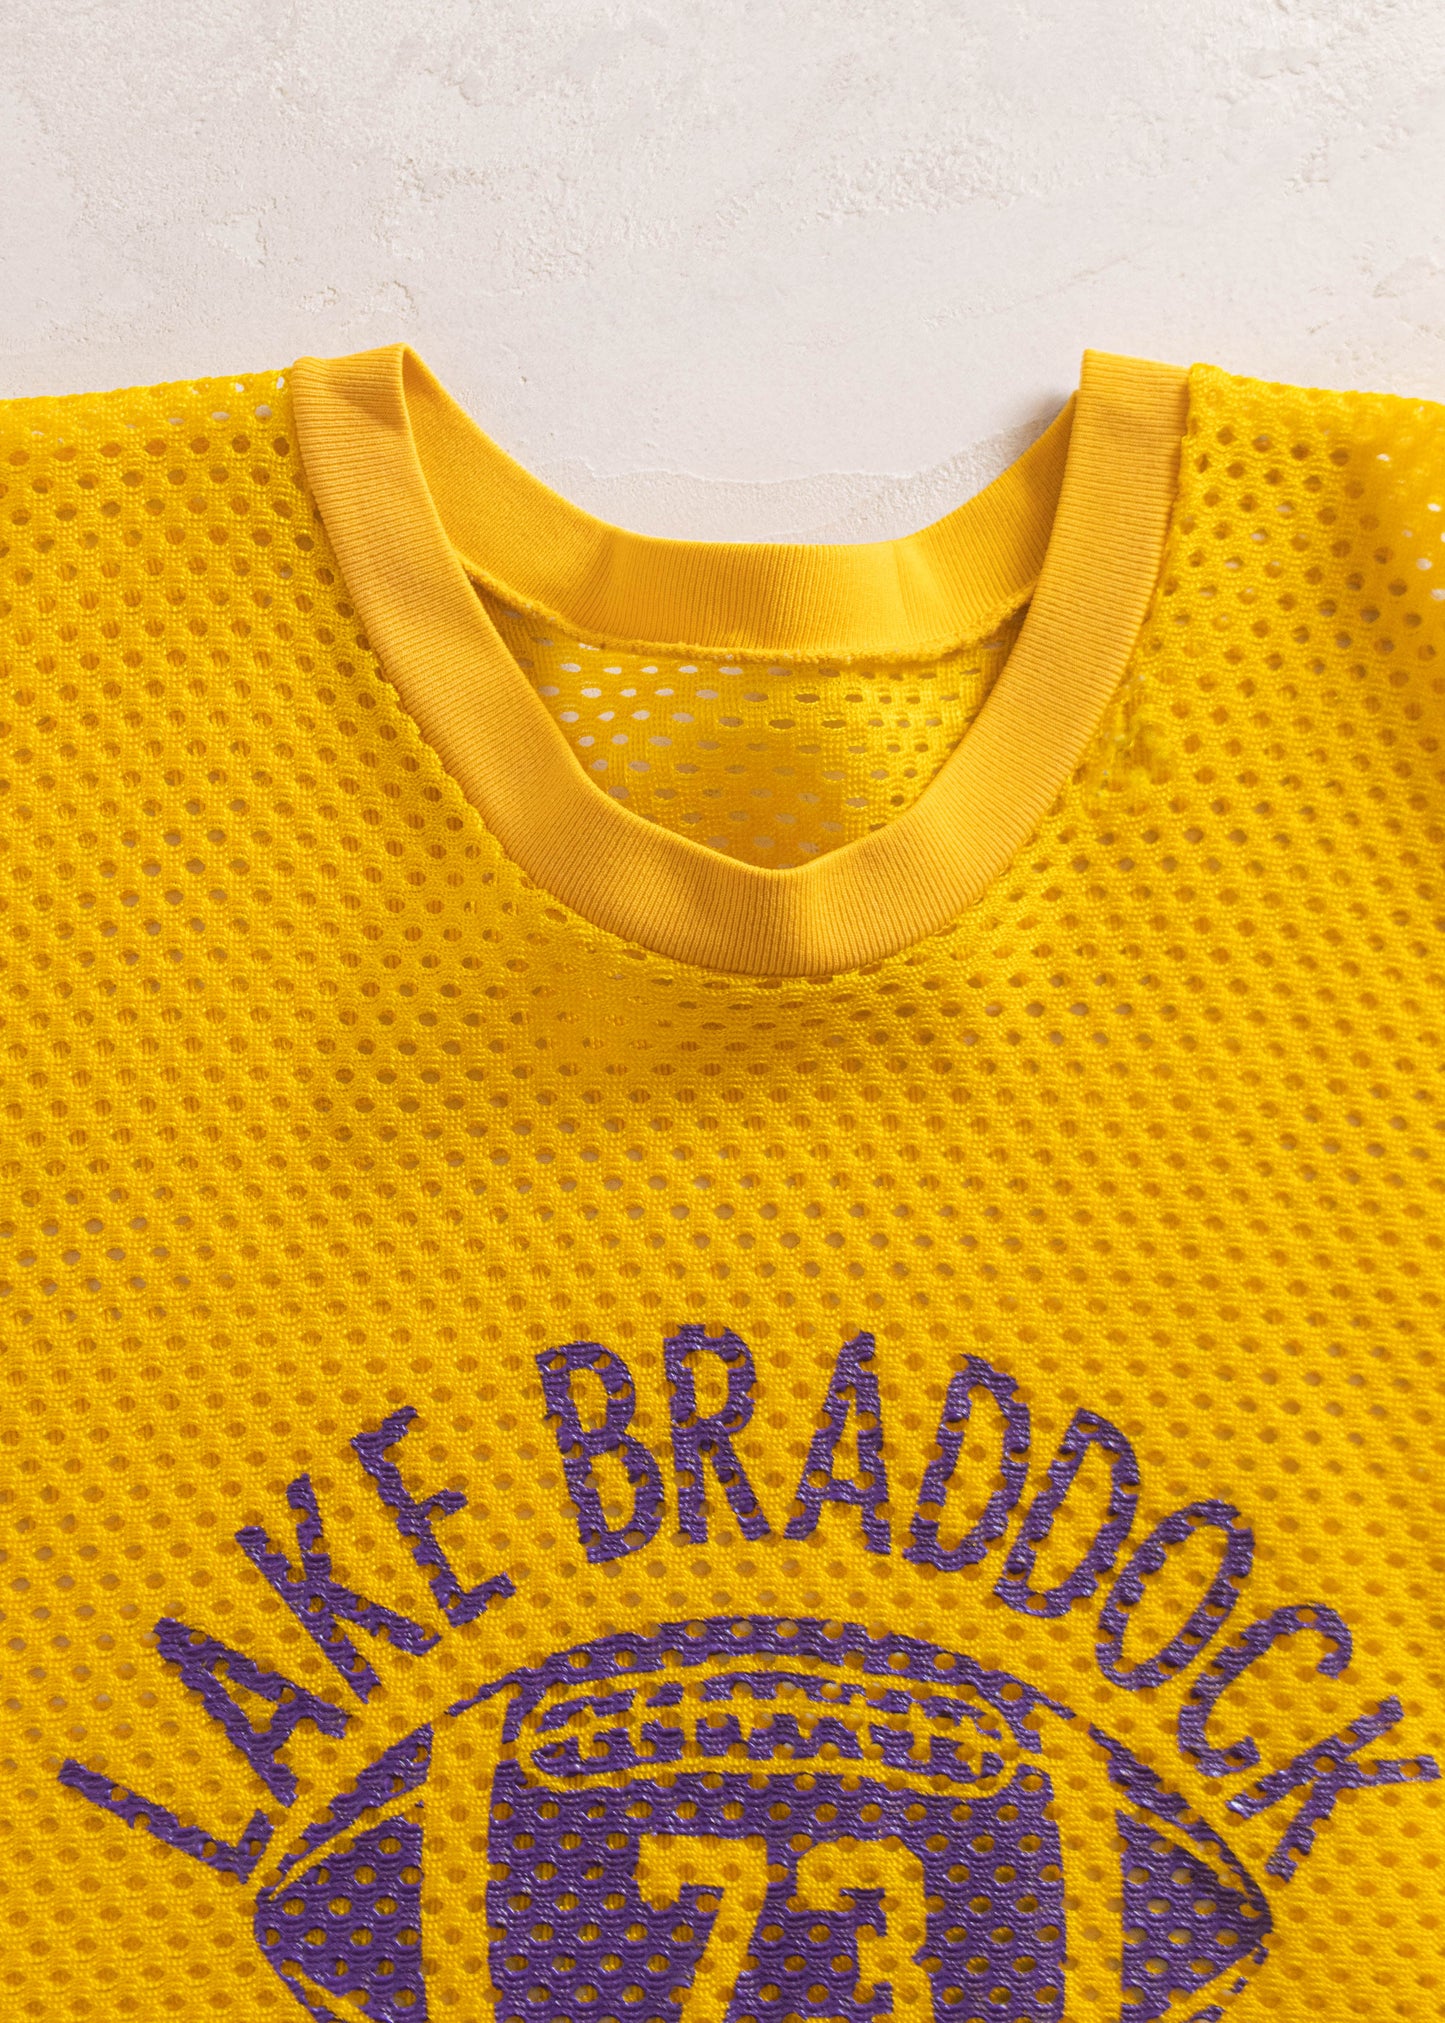 1970s Champion Lake Braddock Mesh Sport Jersey Size L/XL